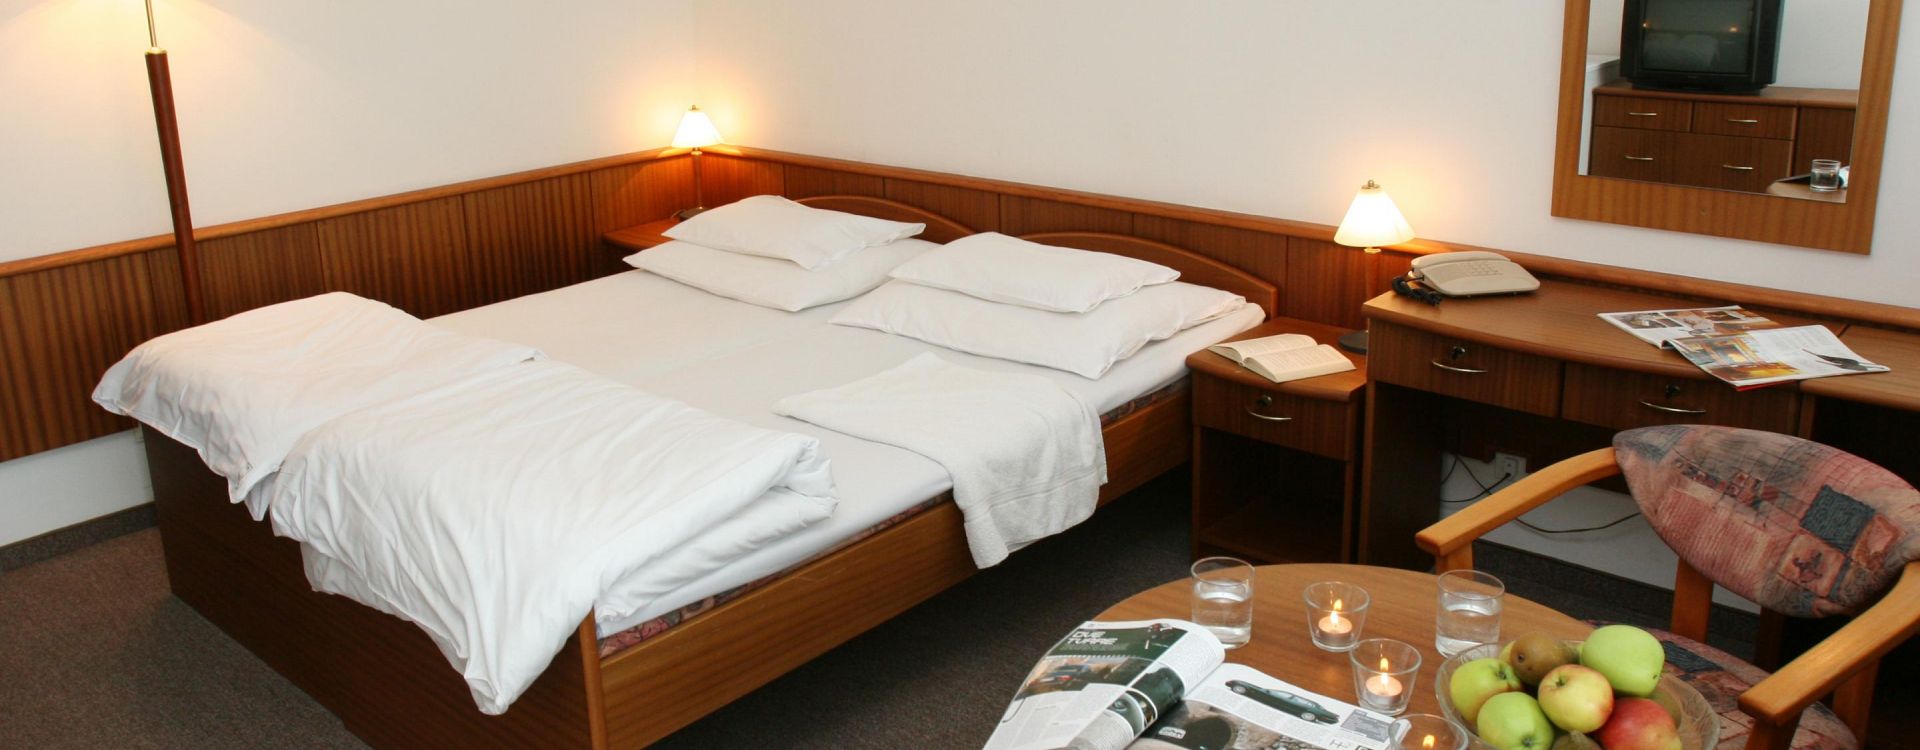 Splendid Ensana Health Spa Hotel - Ubytování s polopenzí výhodně!